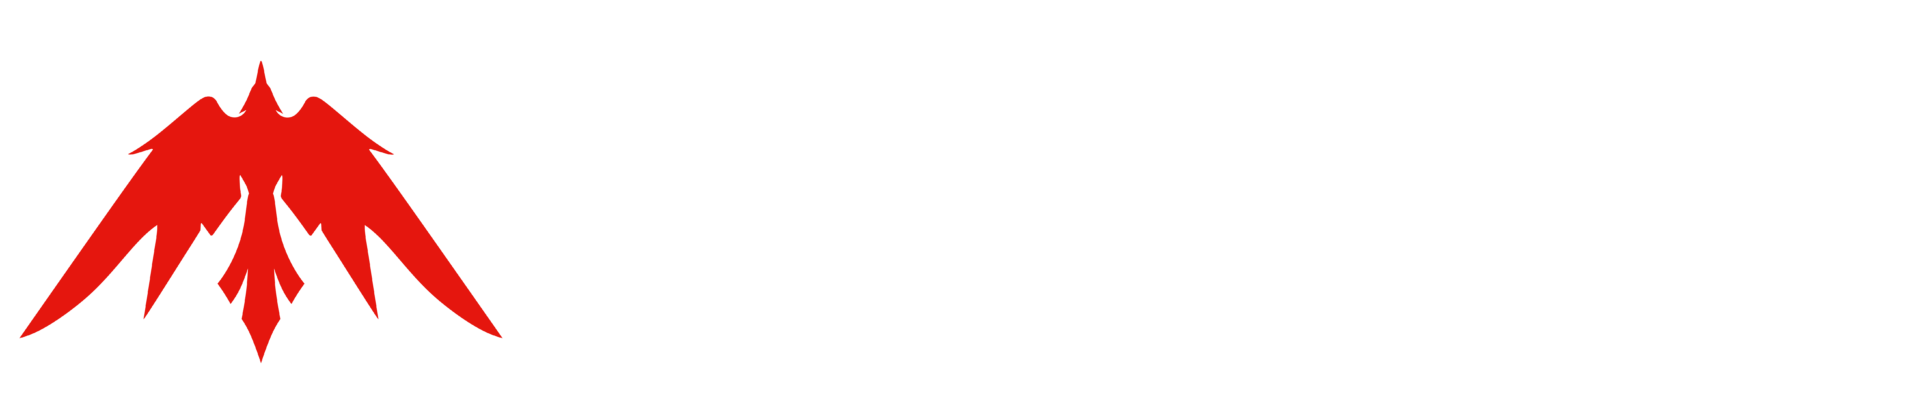 Take Top Entertainment